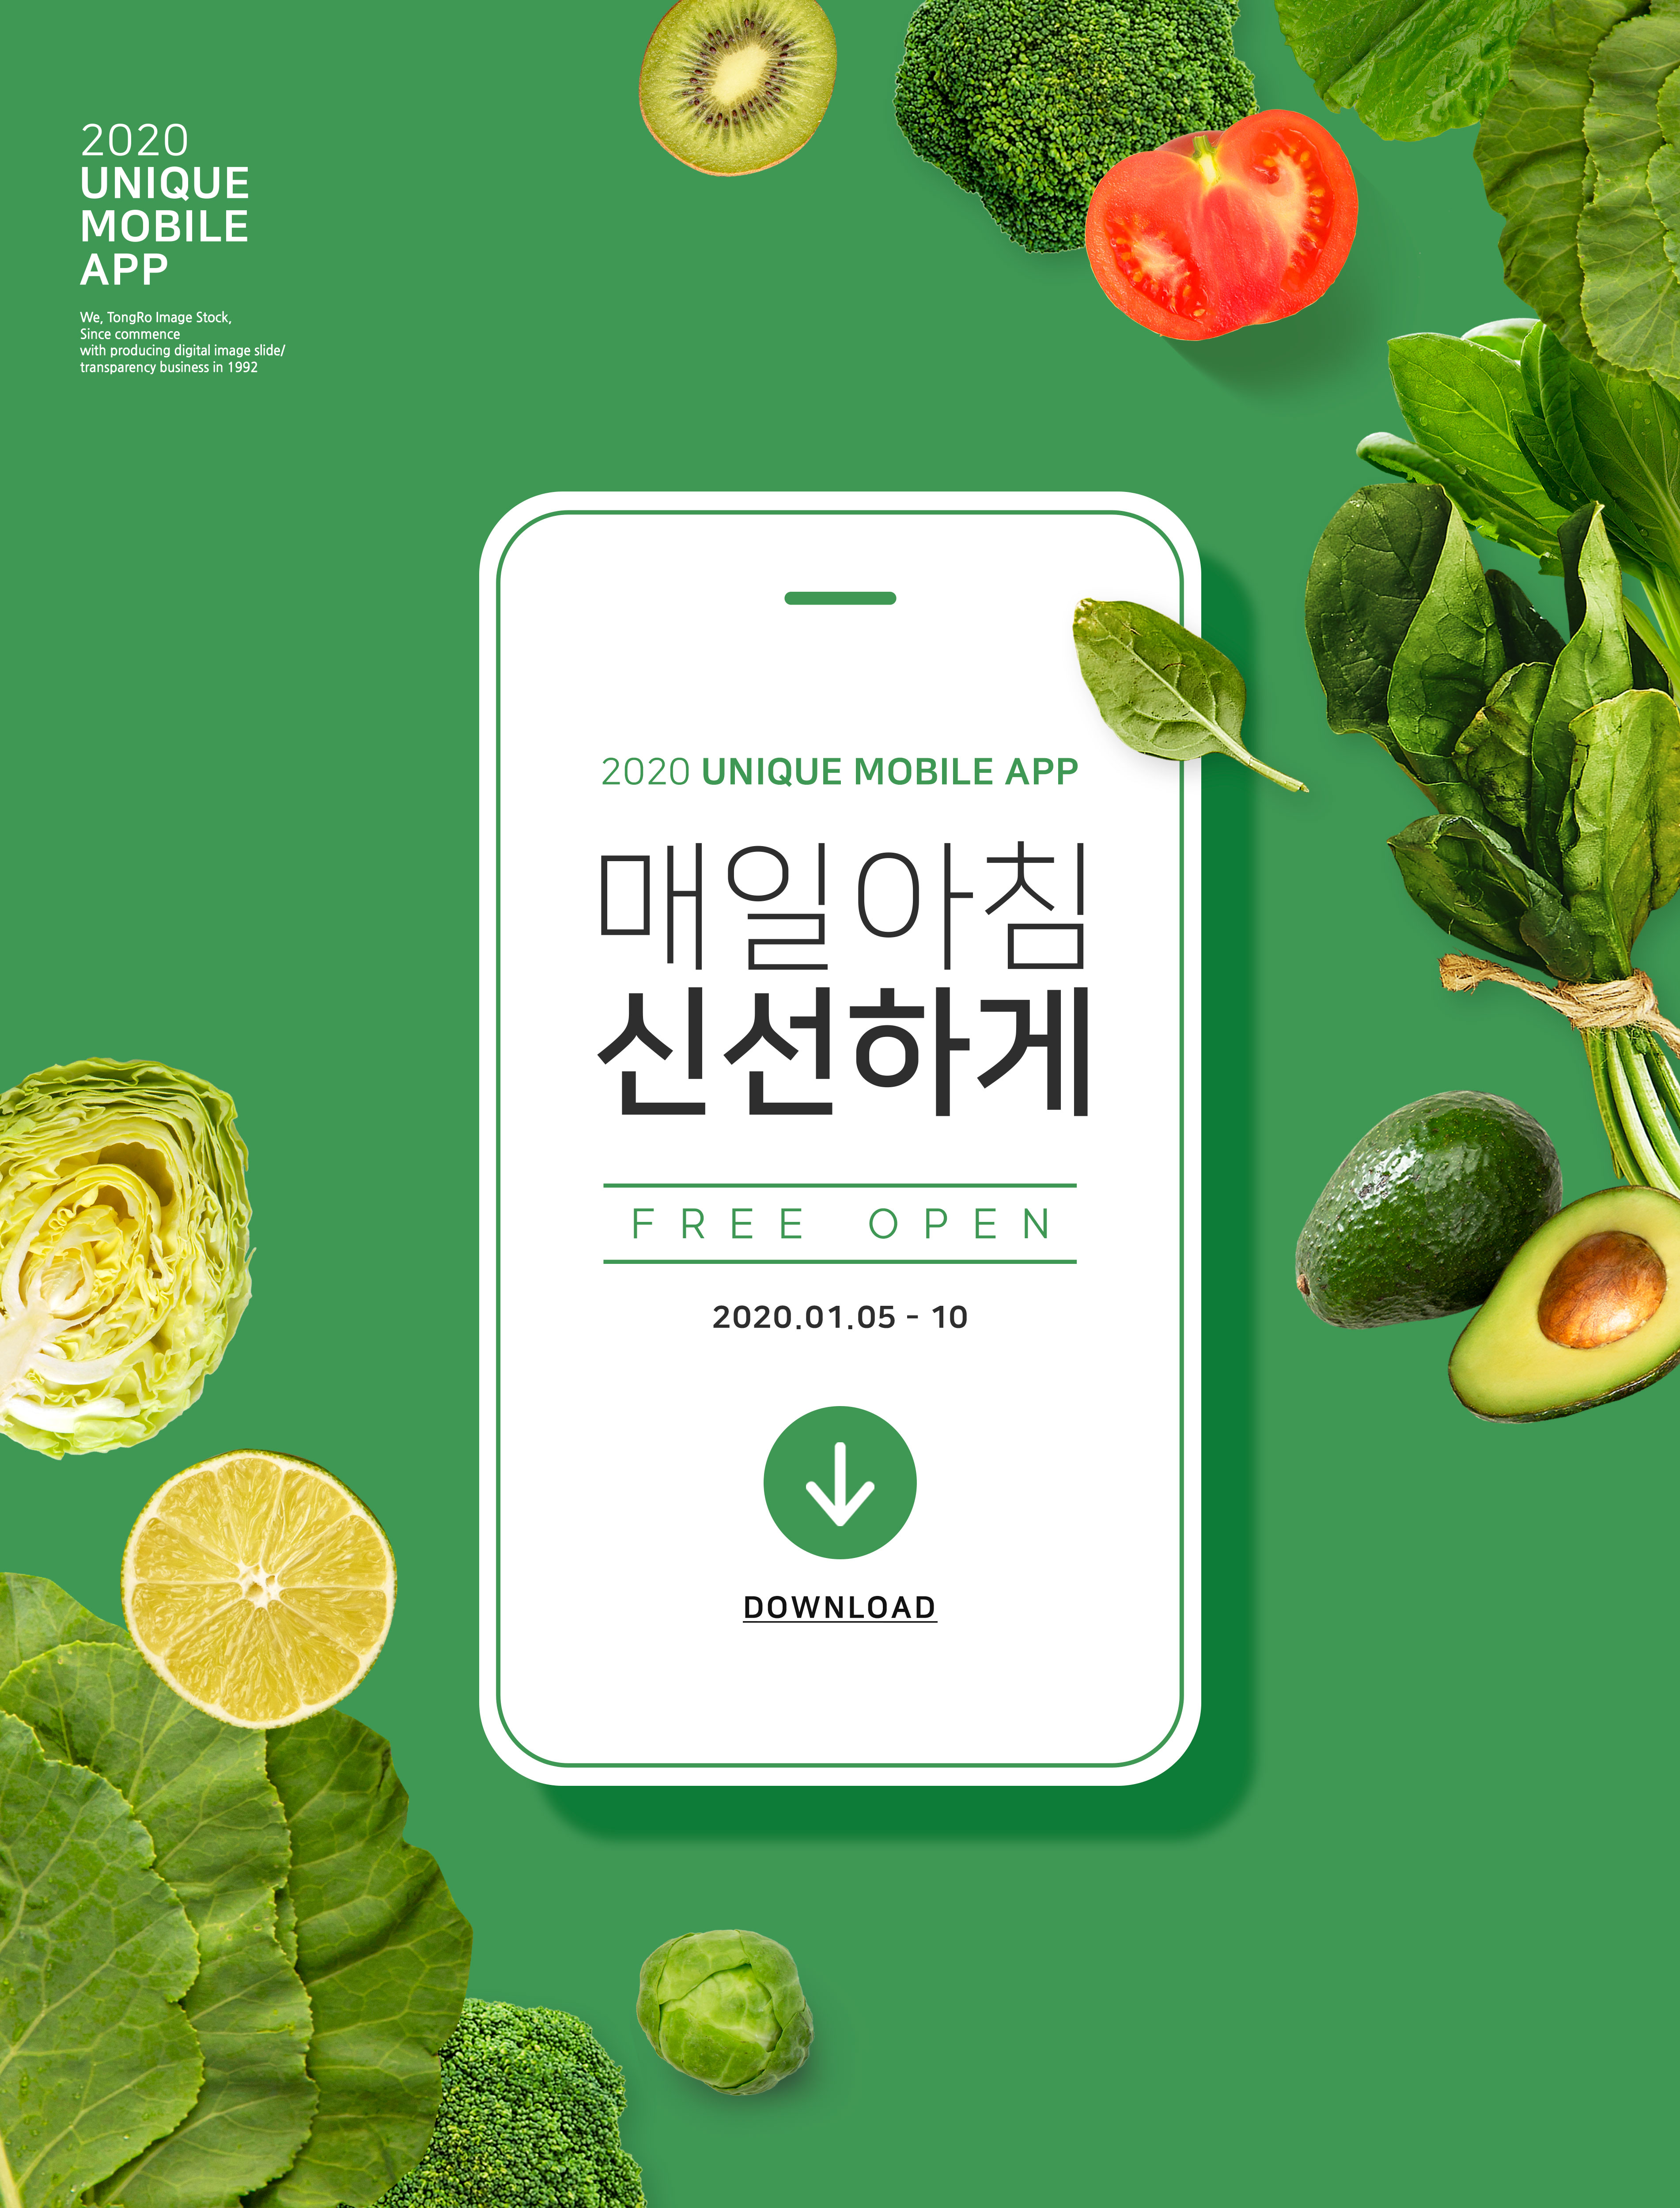 绿色新鲜有机蔬菜在线订购配送主题海报PSD素材第一素材精选韩国素材插图